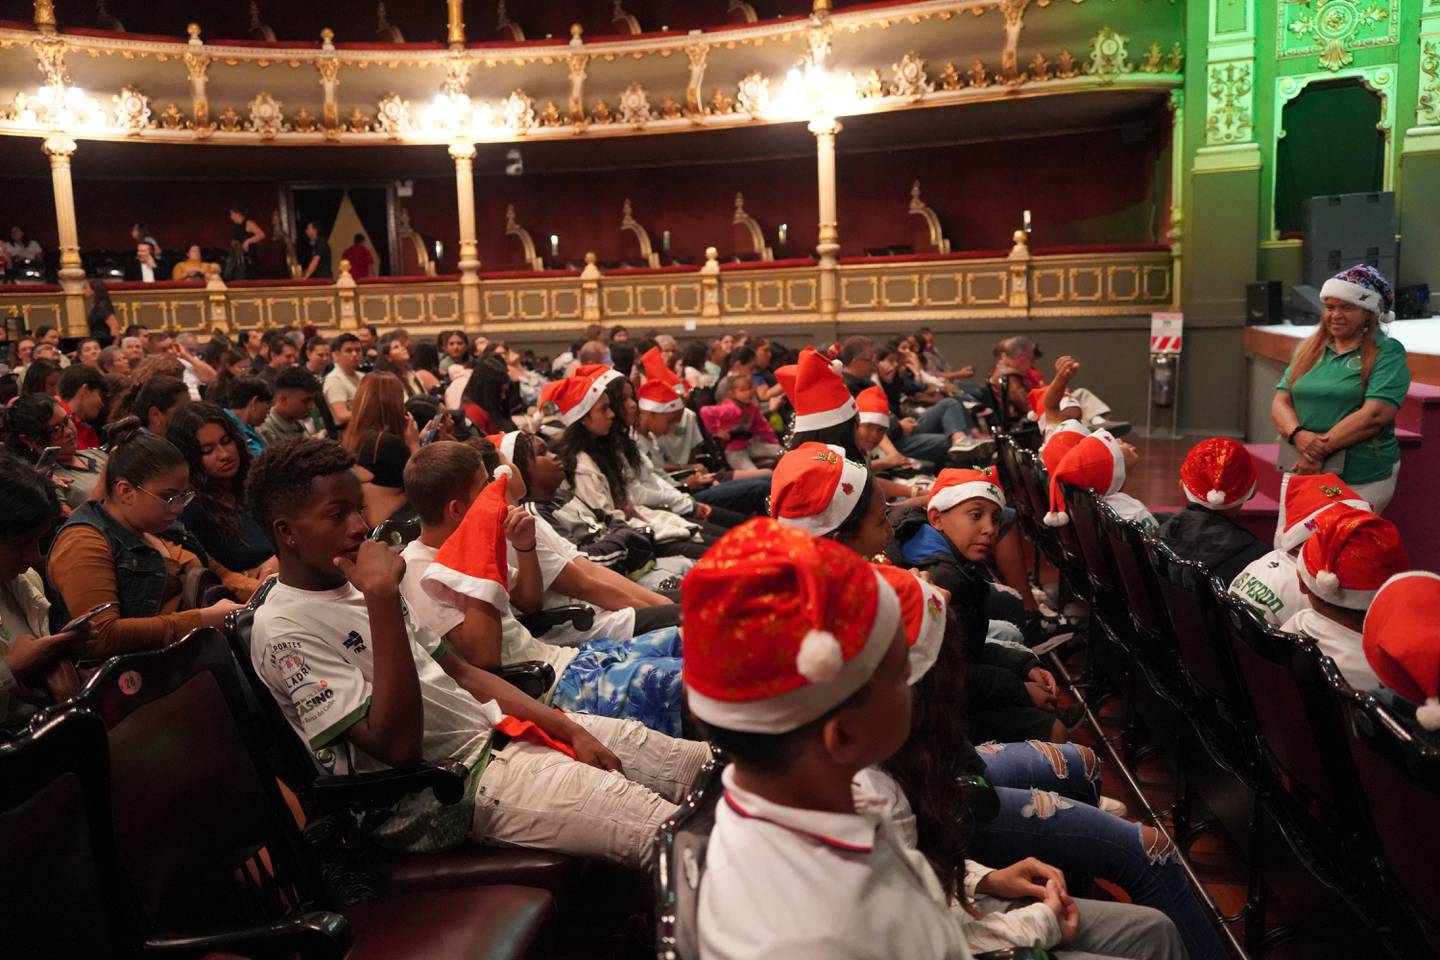 La audiencia de la obra de teatro también se inspira del espíritu festivo, ya que algunos espectadores disfrutan de la obra portando gorros navideños.